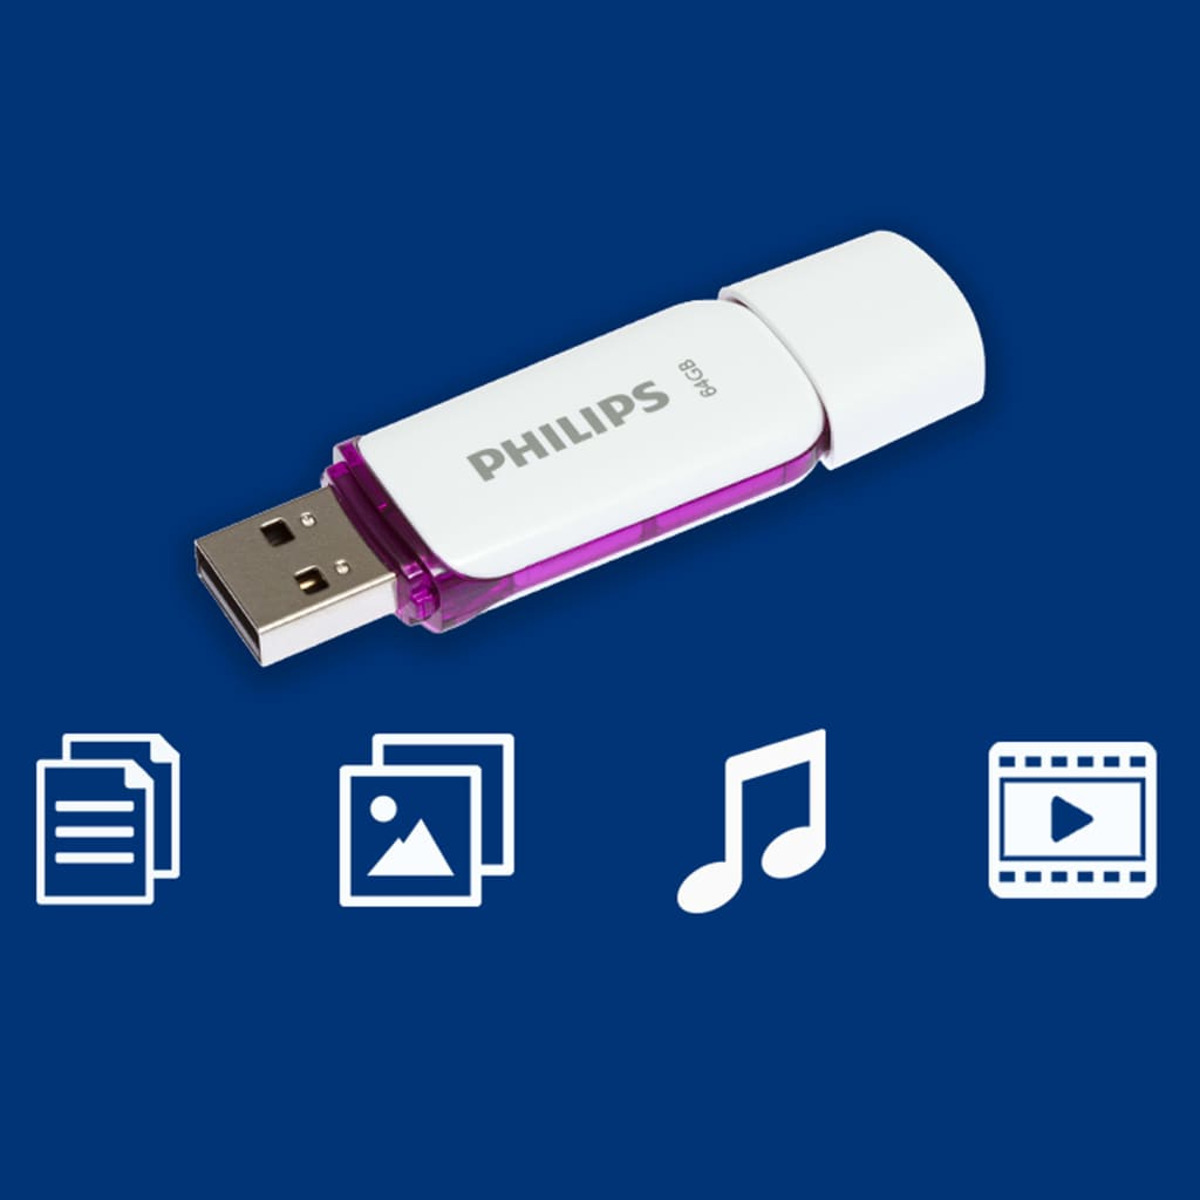 64 Purple®, Snow weiss PHILIPS GB) USB-Stick MB/s, Magic 25 (Weiß, 64GB Edition